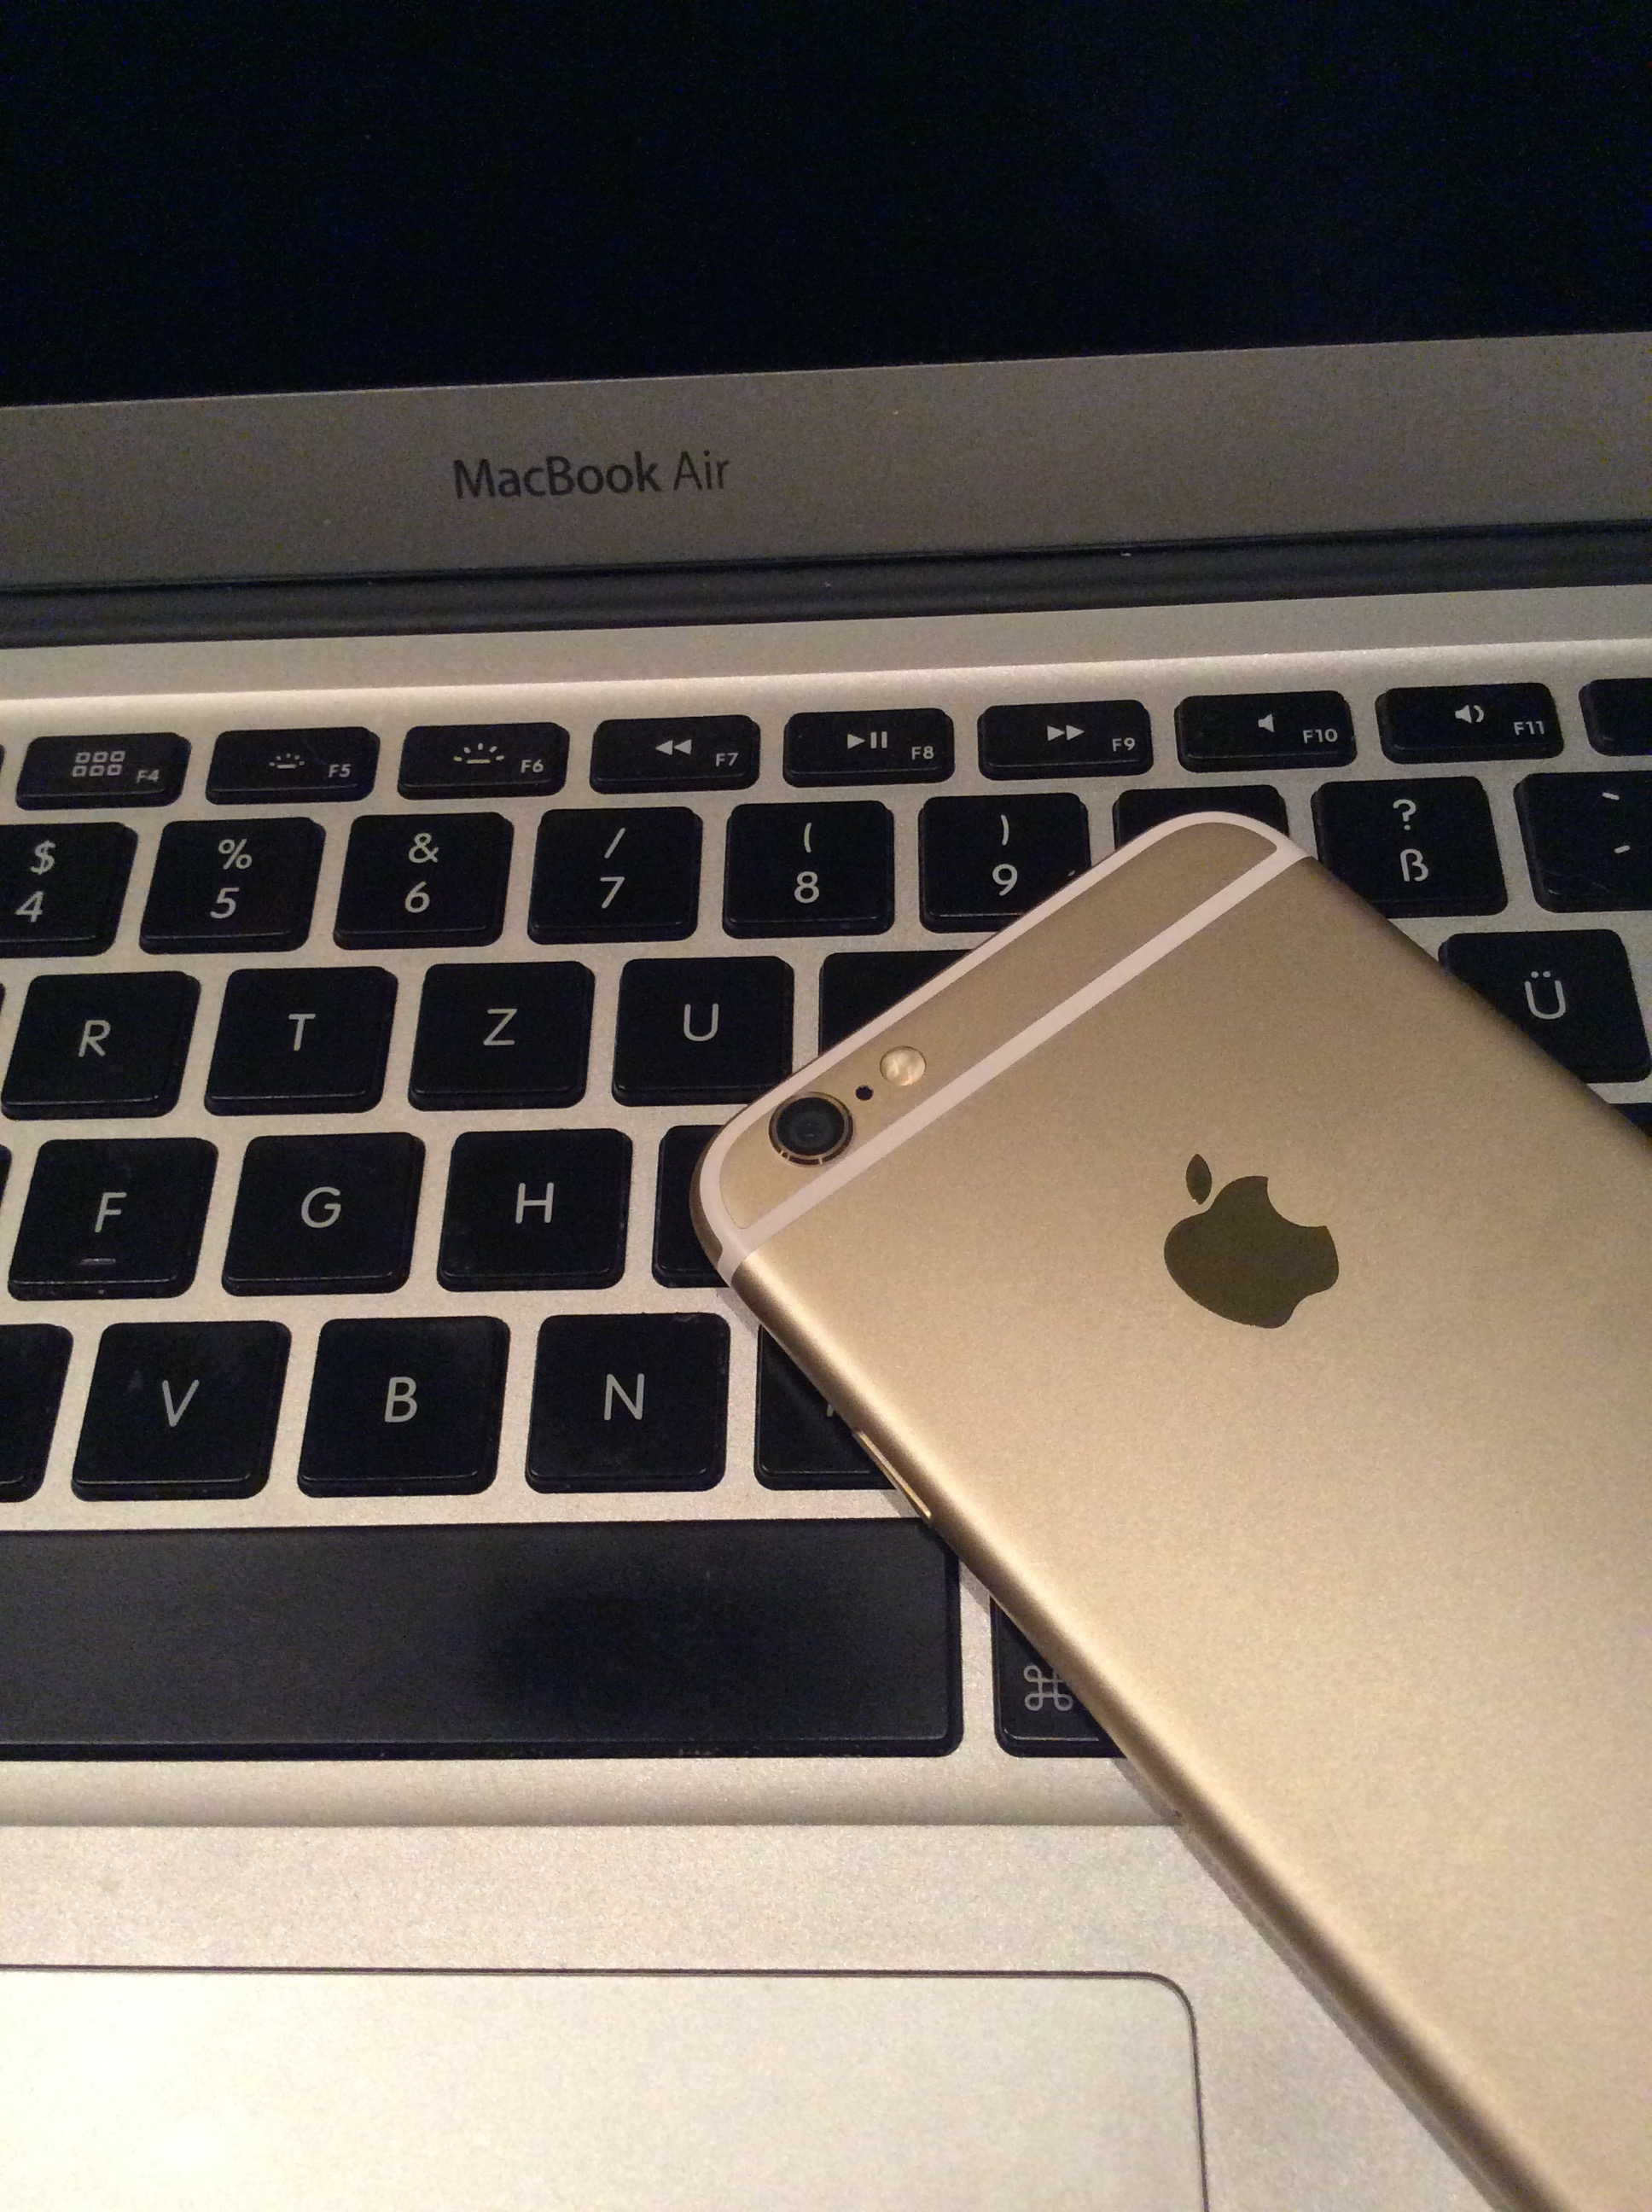 Goldenes iPhone 6 Rückseite im Farb-Vergleich zum MacBook Air